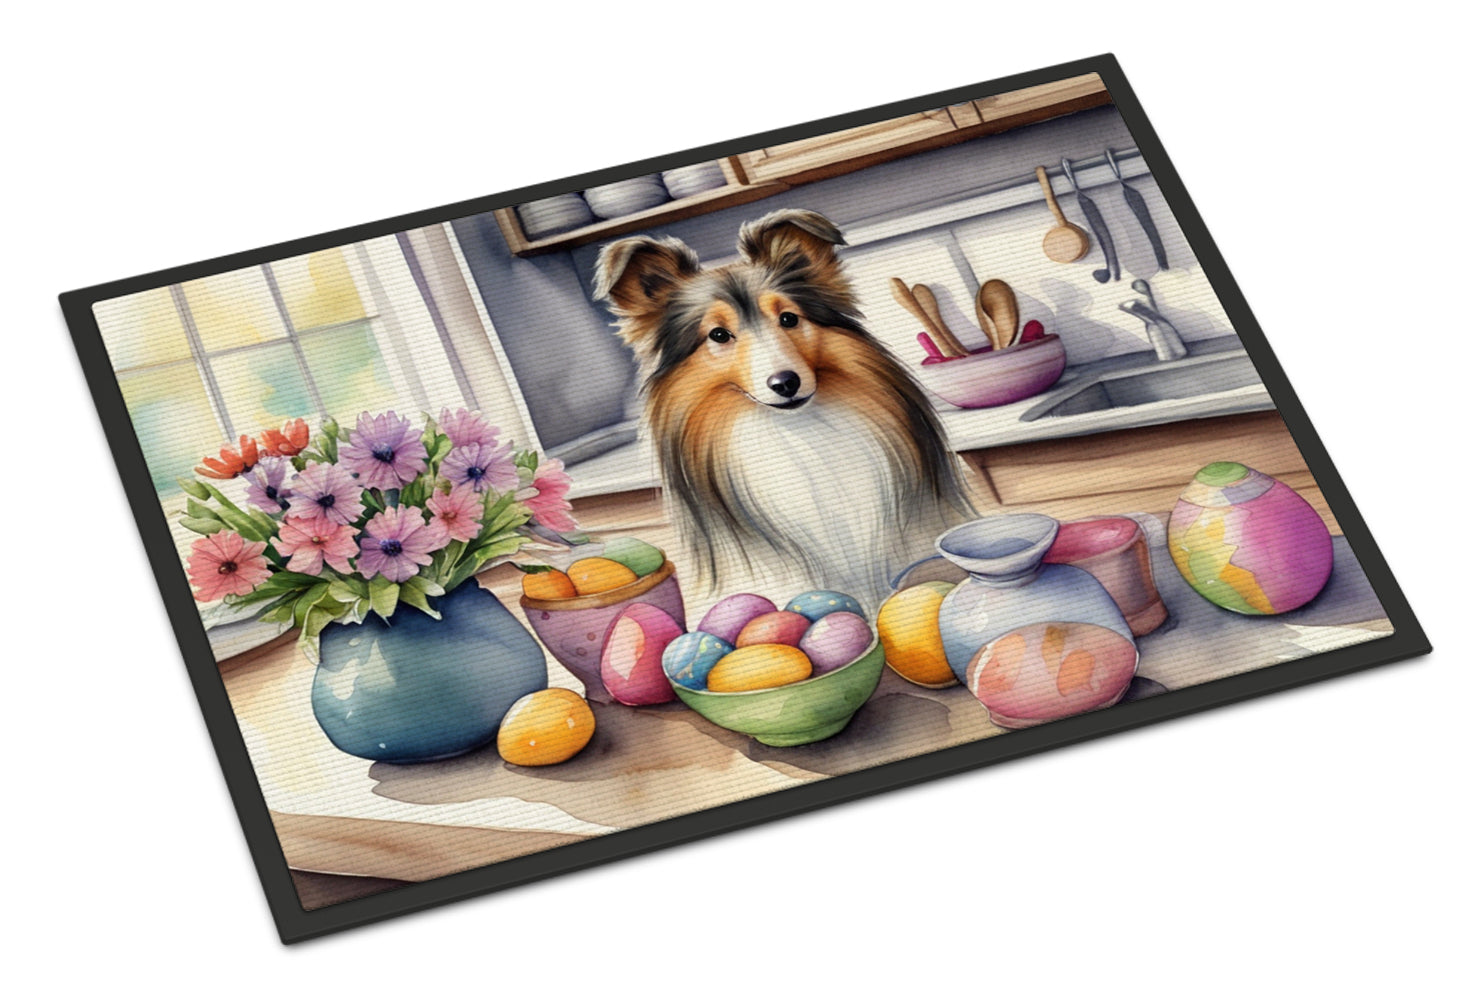 Buy this Decorating Easter Sheltie Doormat